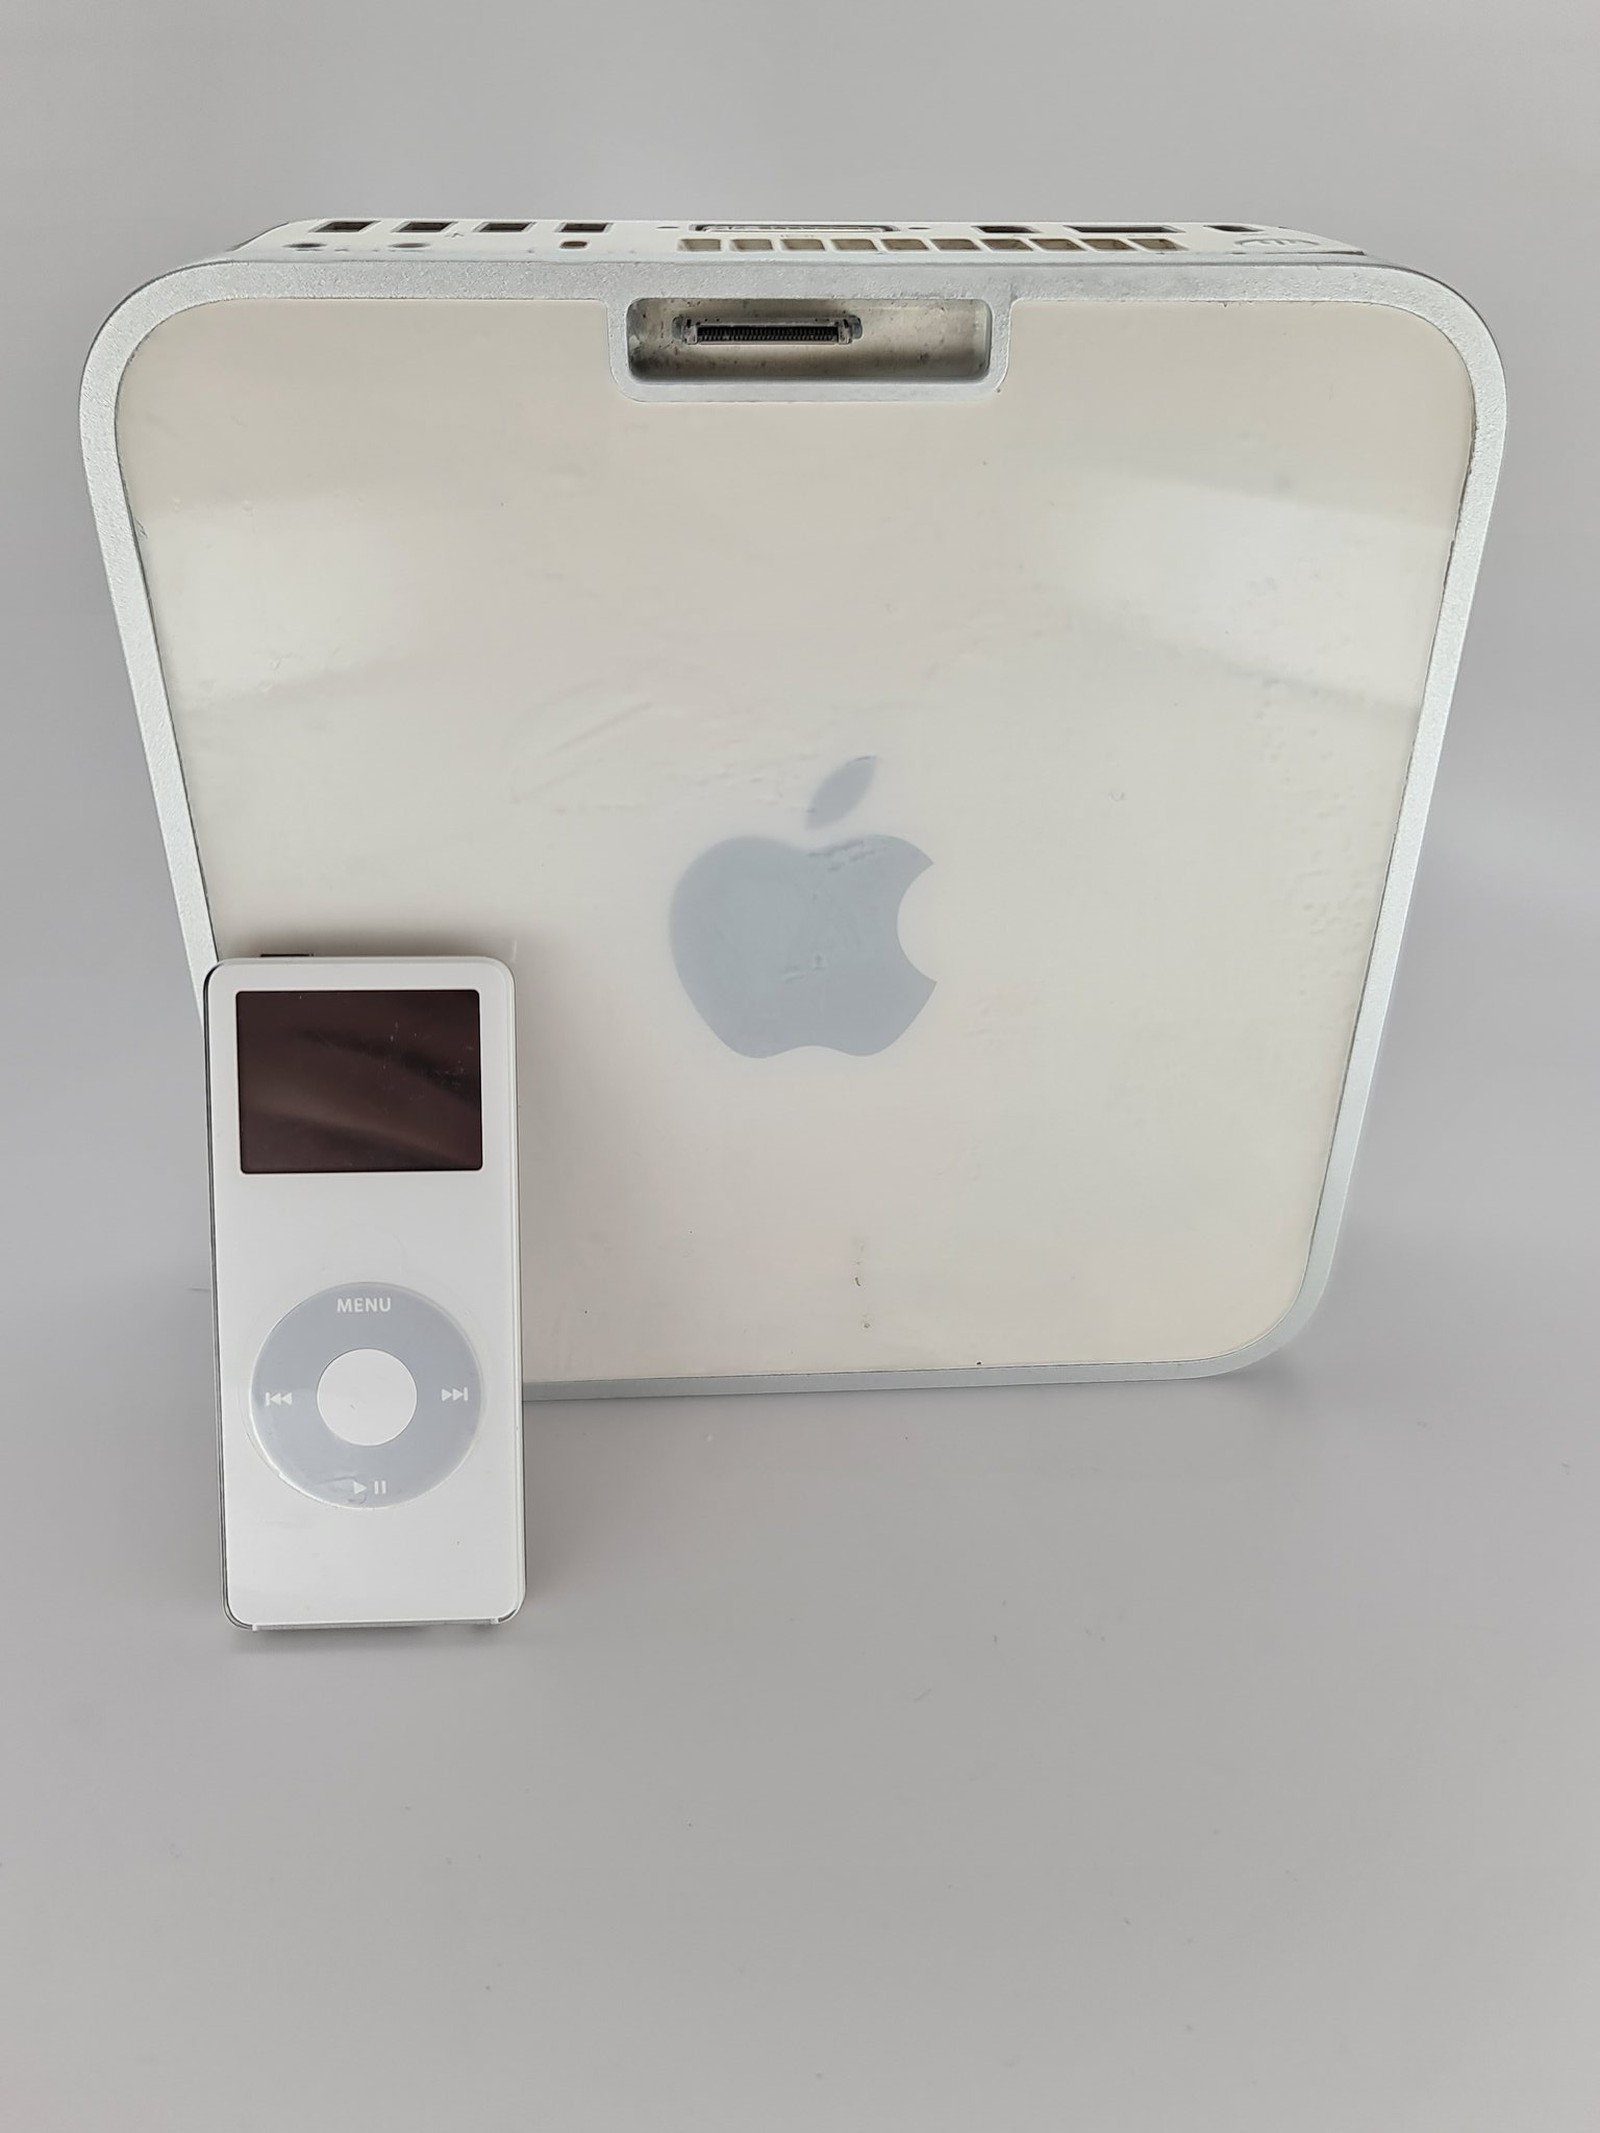 mac mini with ipod dock